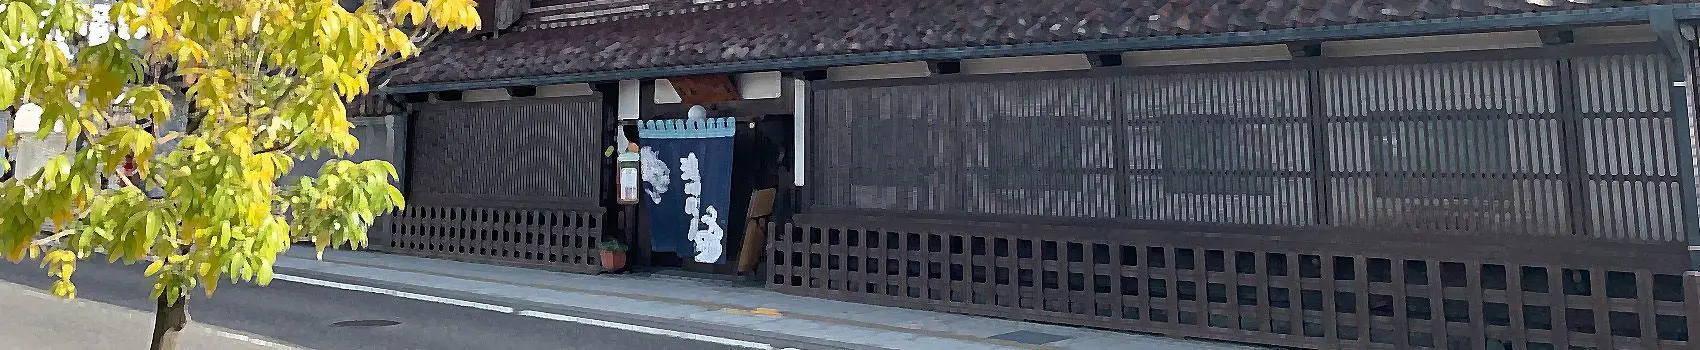 渋川問屋入口